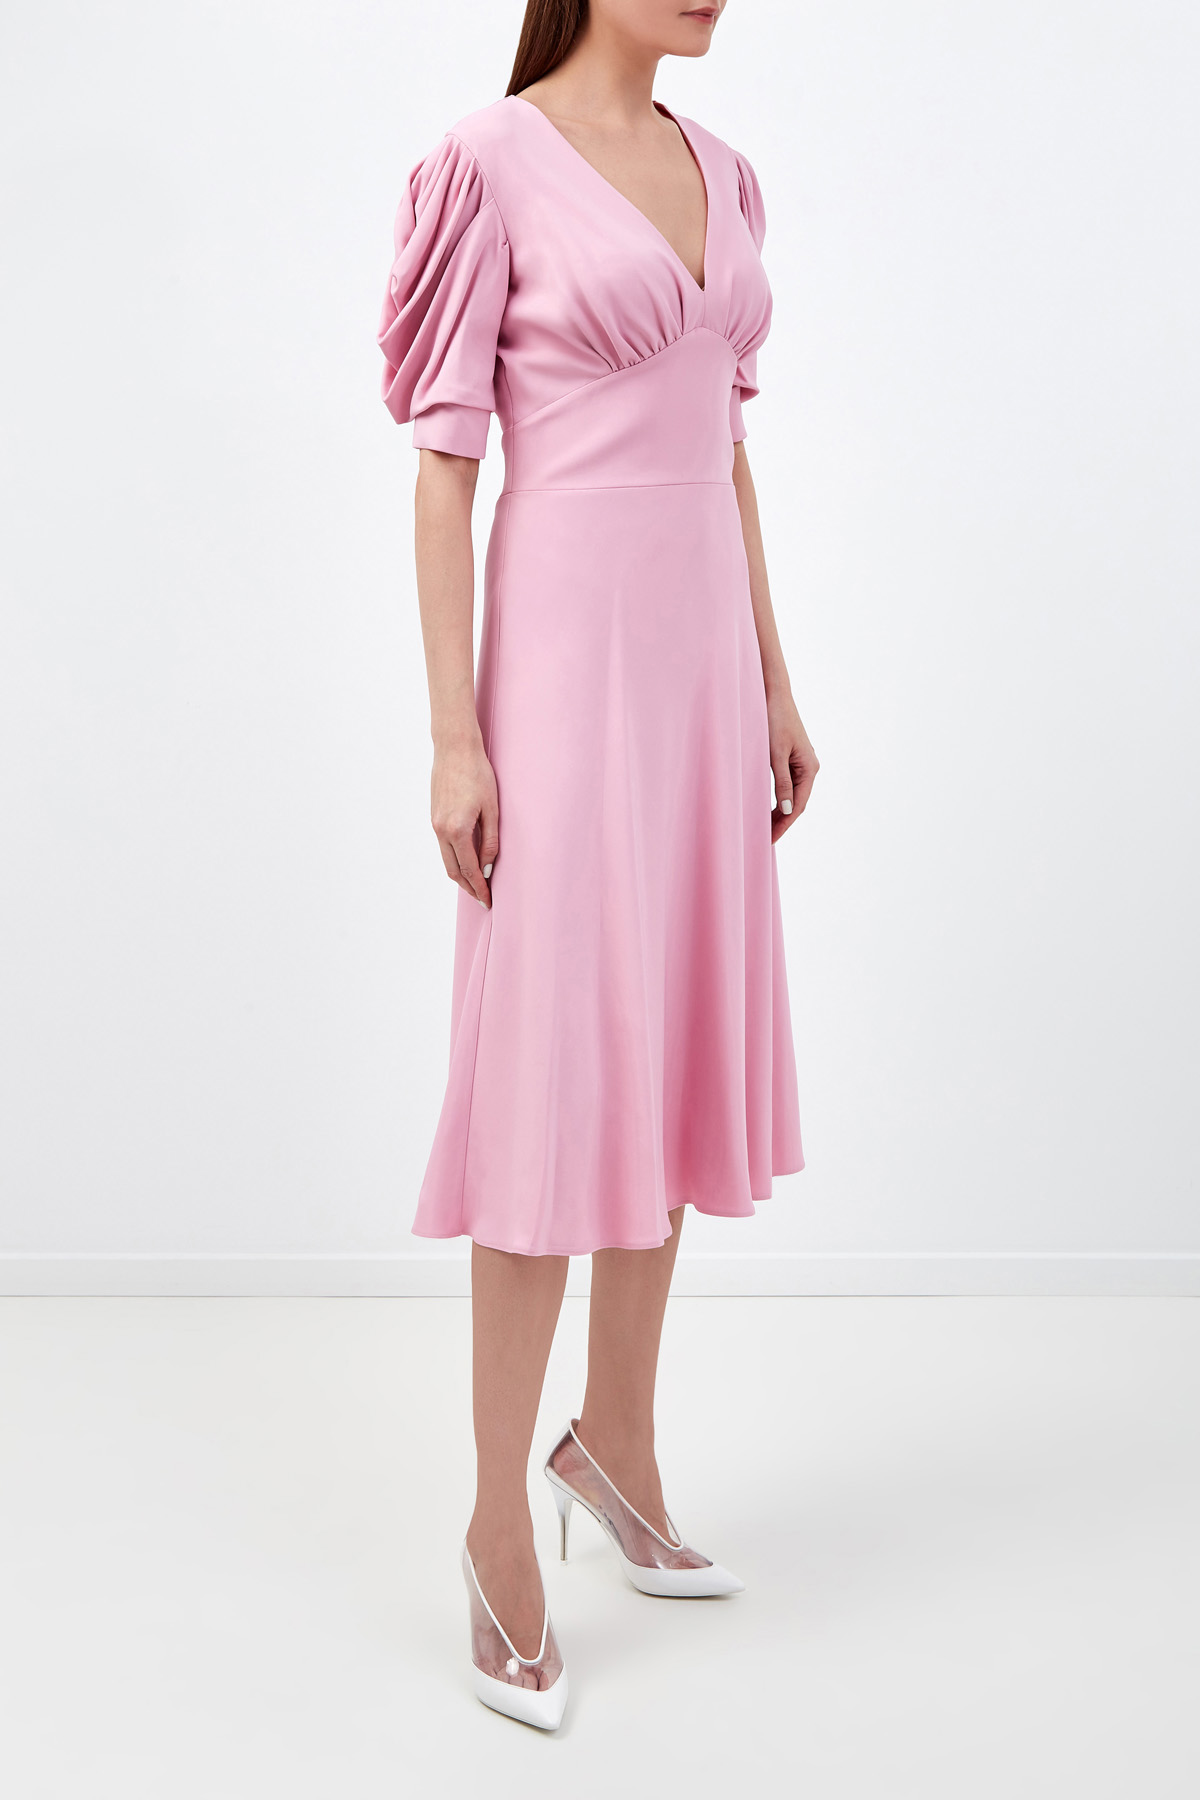 Платье А-силуэта с драпировками и объемными рукавами ERMANNO SCERVINO, цвет розовый, размер 42;44;40 - фото 3